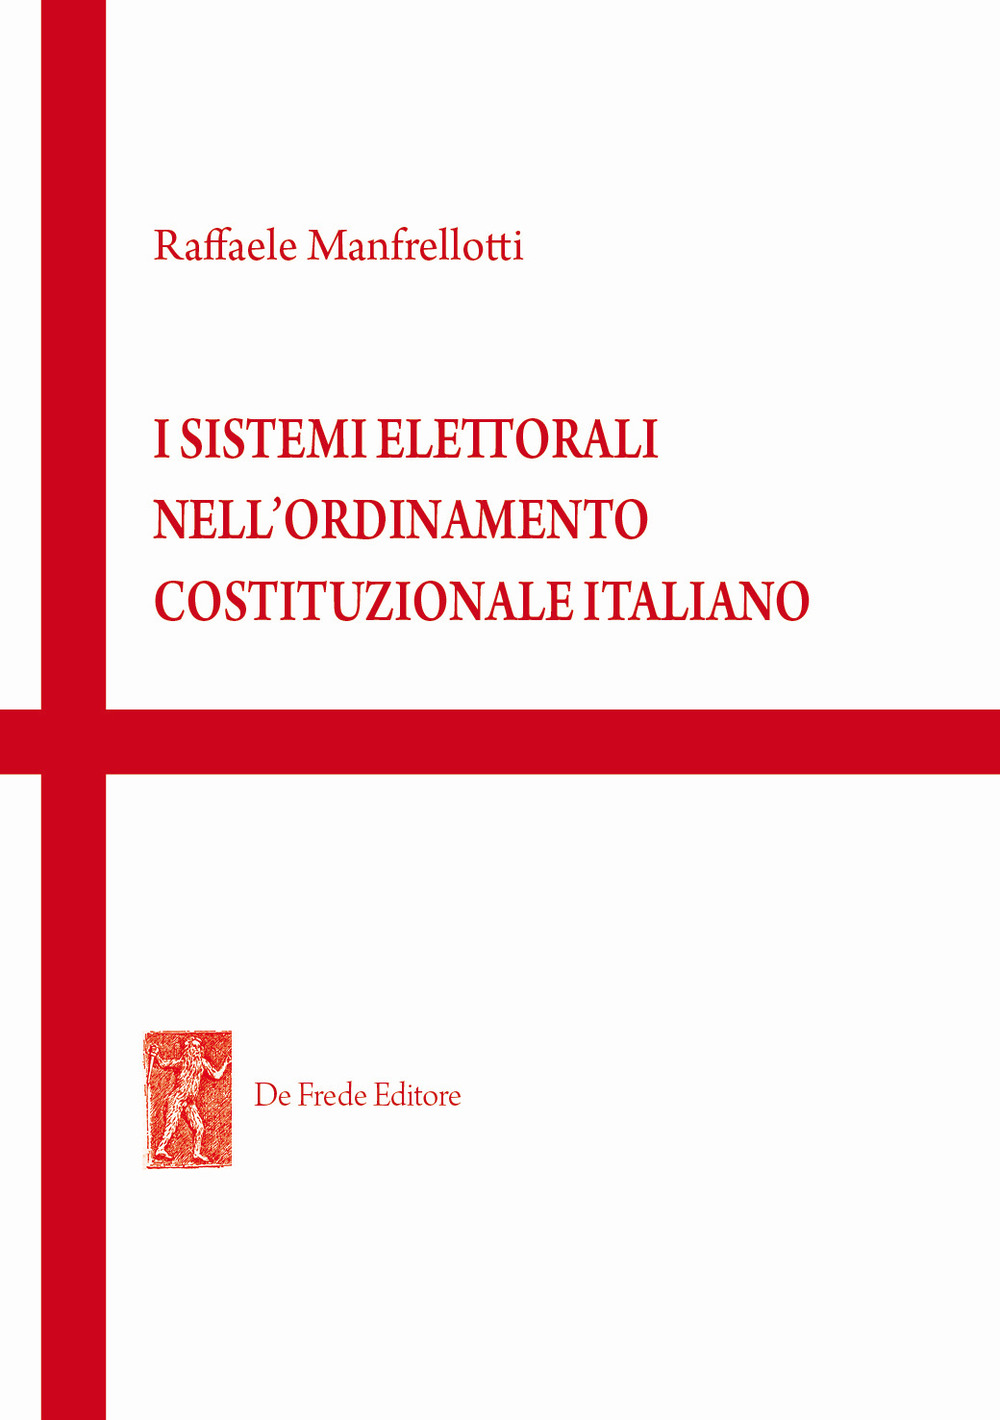 I sistemi elettorali nell'ordinamento costituzionale italiano